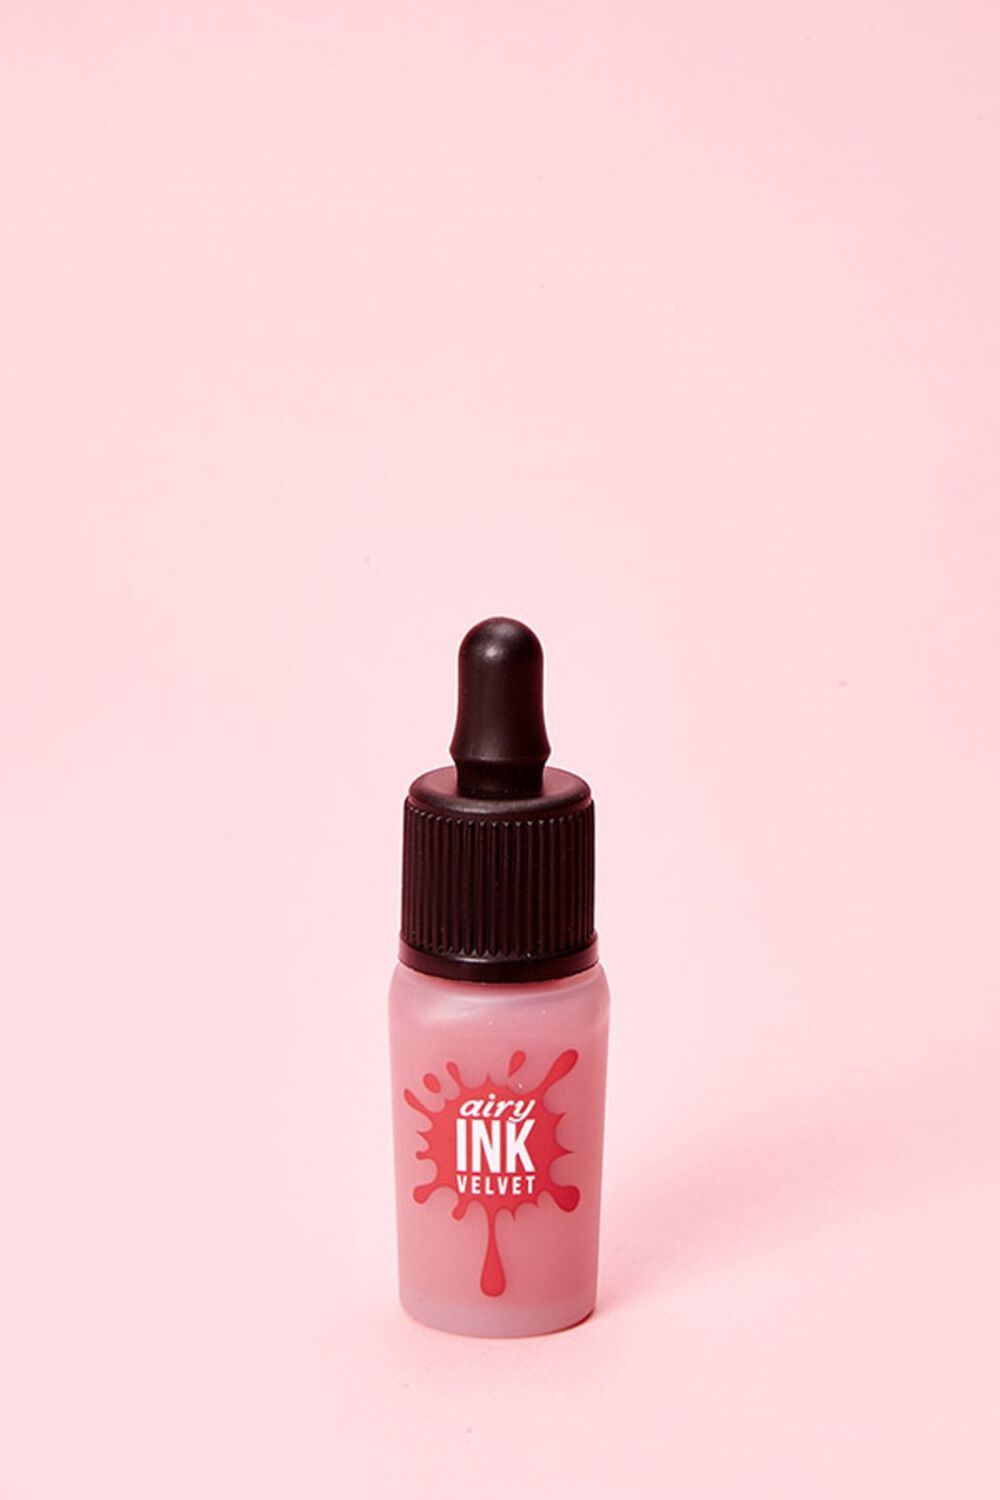 ELF LIGHT ROSE Ink Airy Velvet, image 1